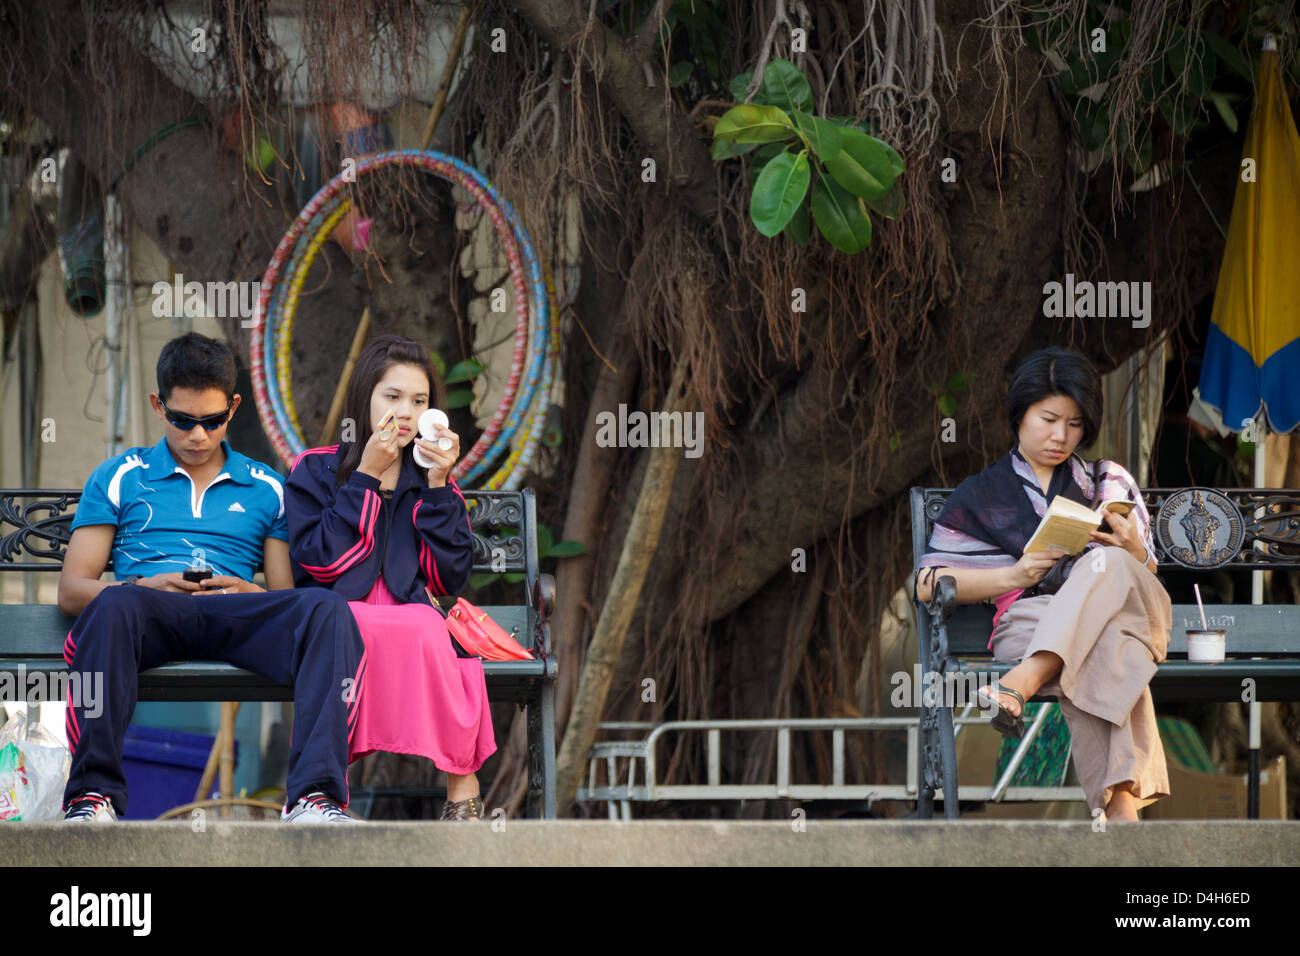 Les thaïs assis dans un parc, l'un est l'utilisation de smartphone, l'un est l'application de rattraper , le dernier est lecture bookd, Bangkok, Thaïlande Banque D'Images